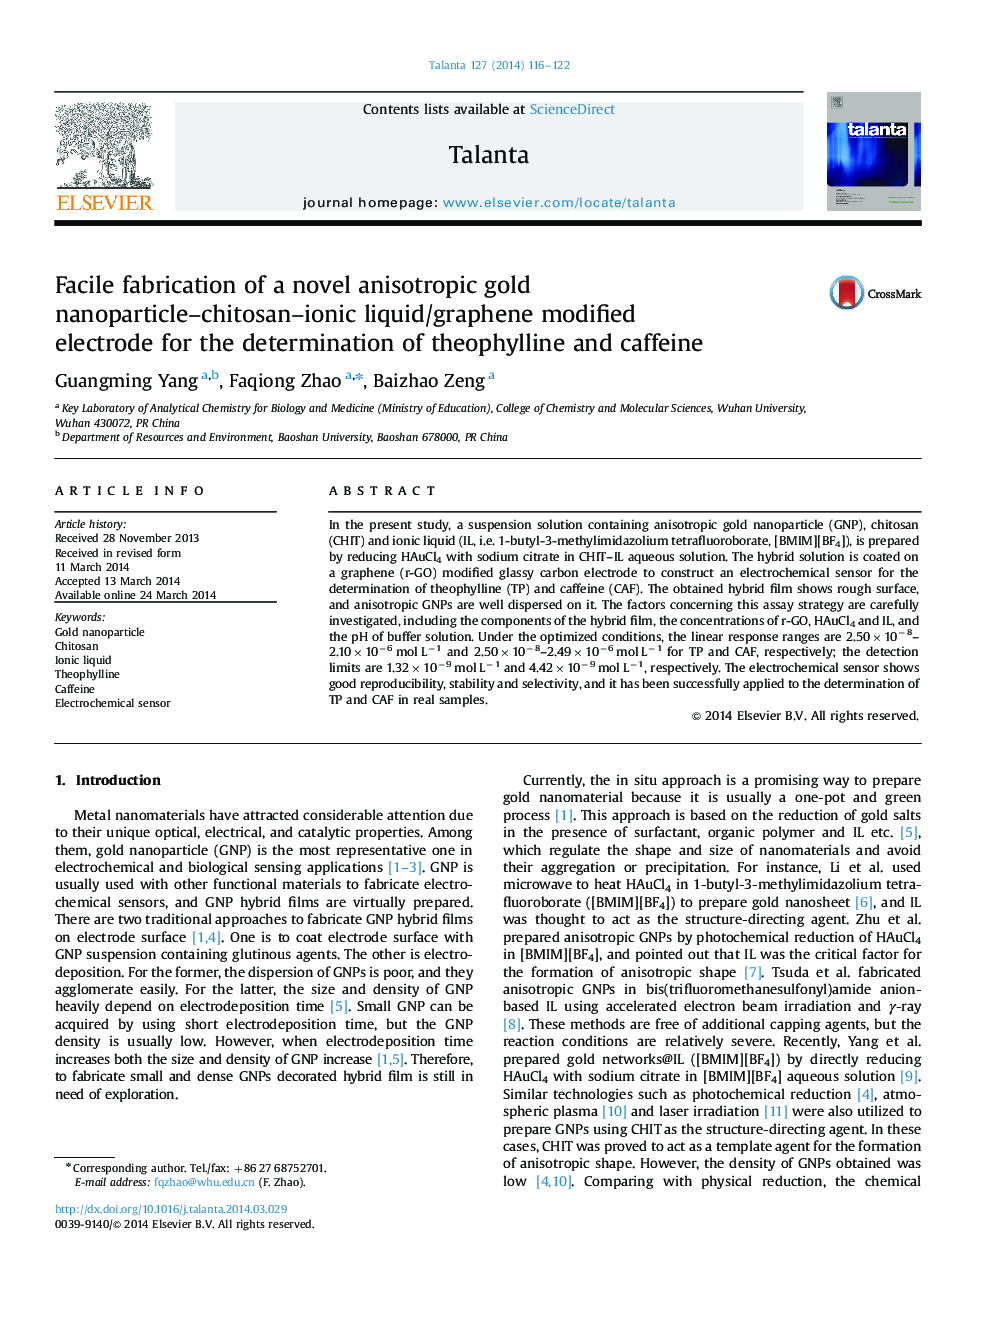 تولید نانوکامپوزیت نانوکامپوزیتی نانوذرات طلائی-کیتوزان-یونیک / الکترود اصلاح شده گرافن برای تعیین تئوفیلین و کافئین 